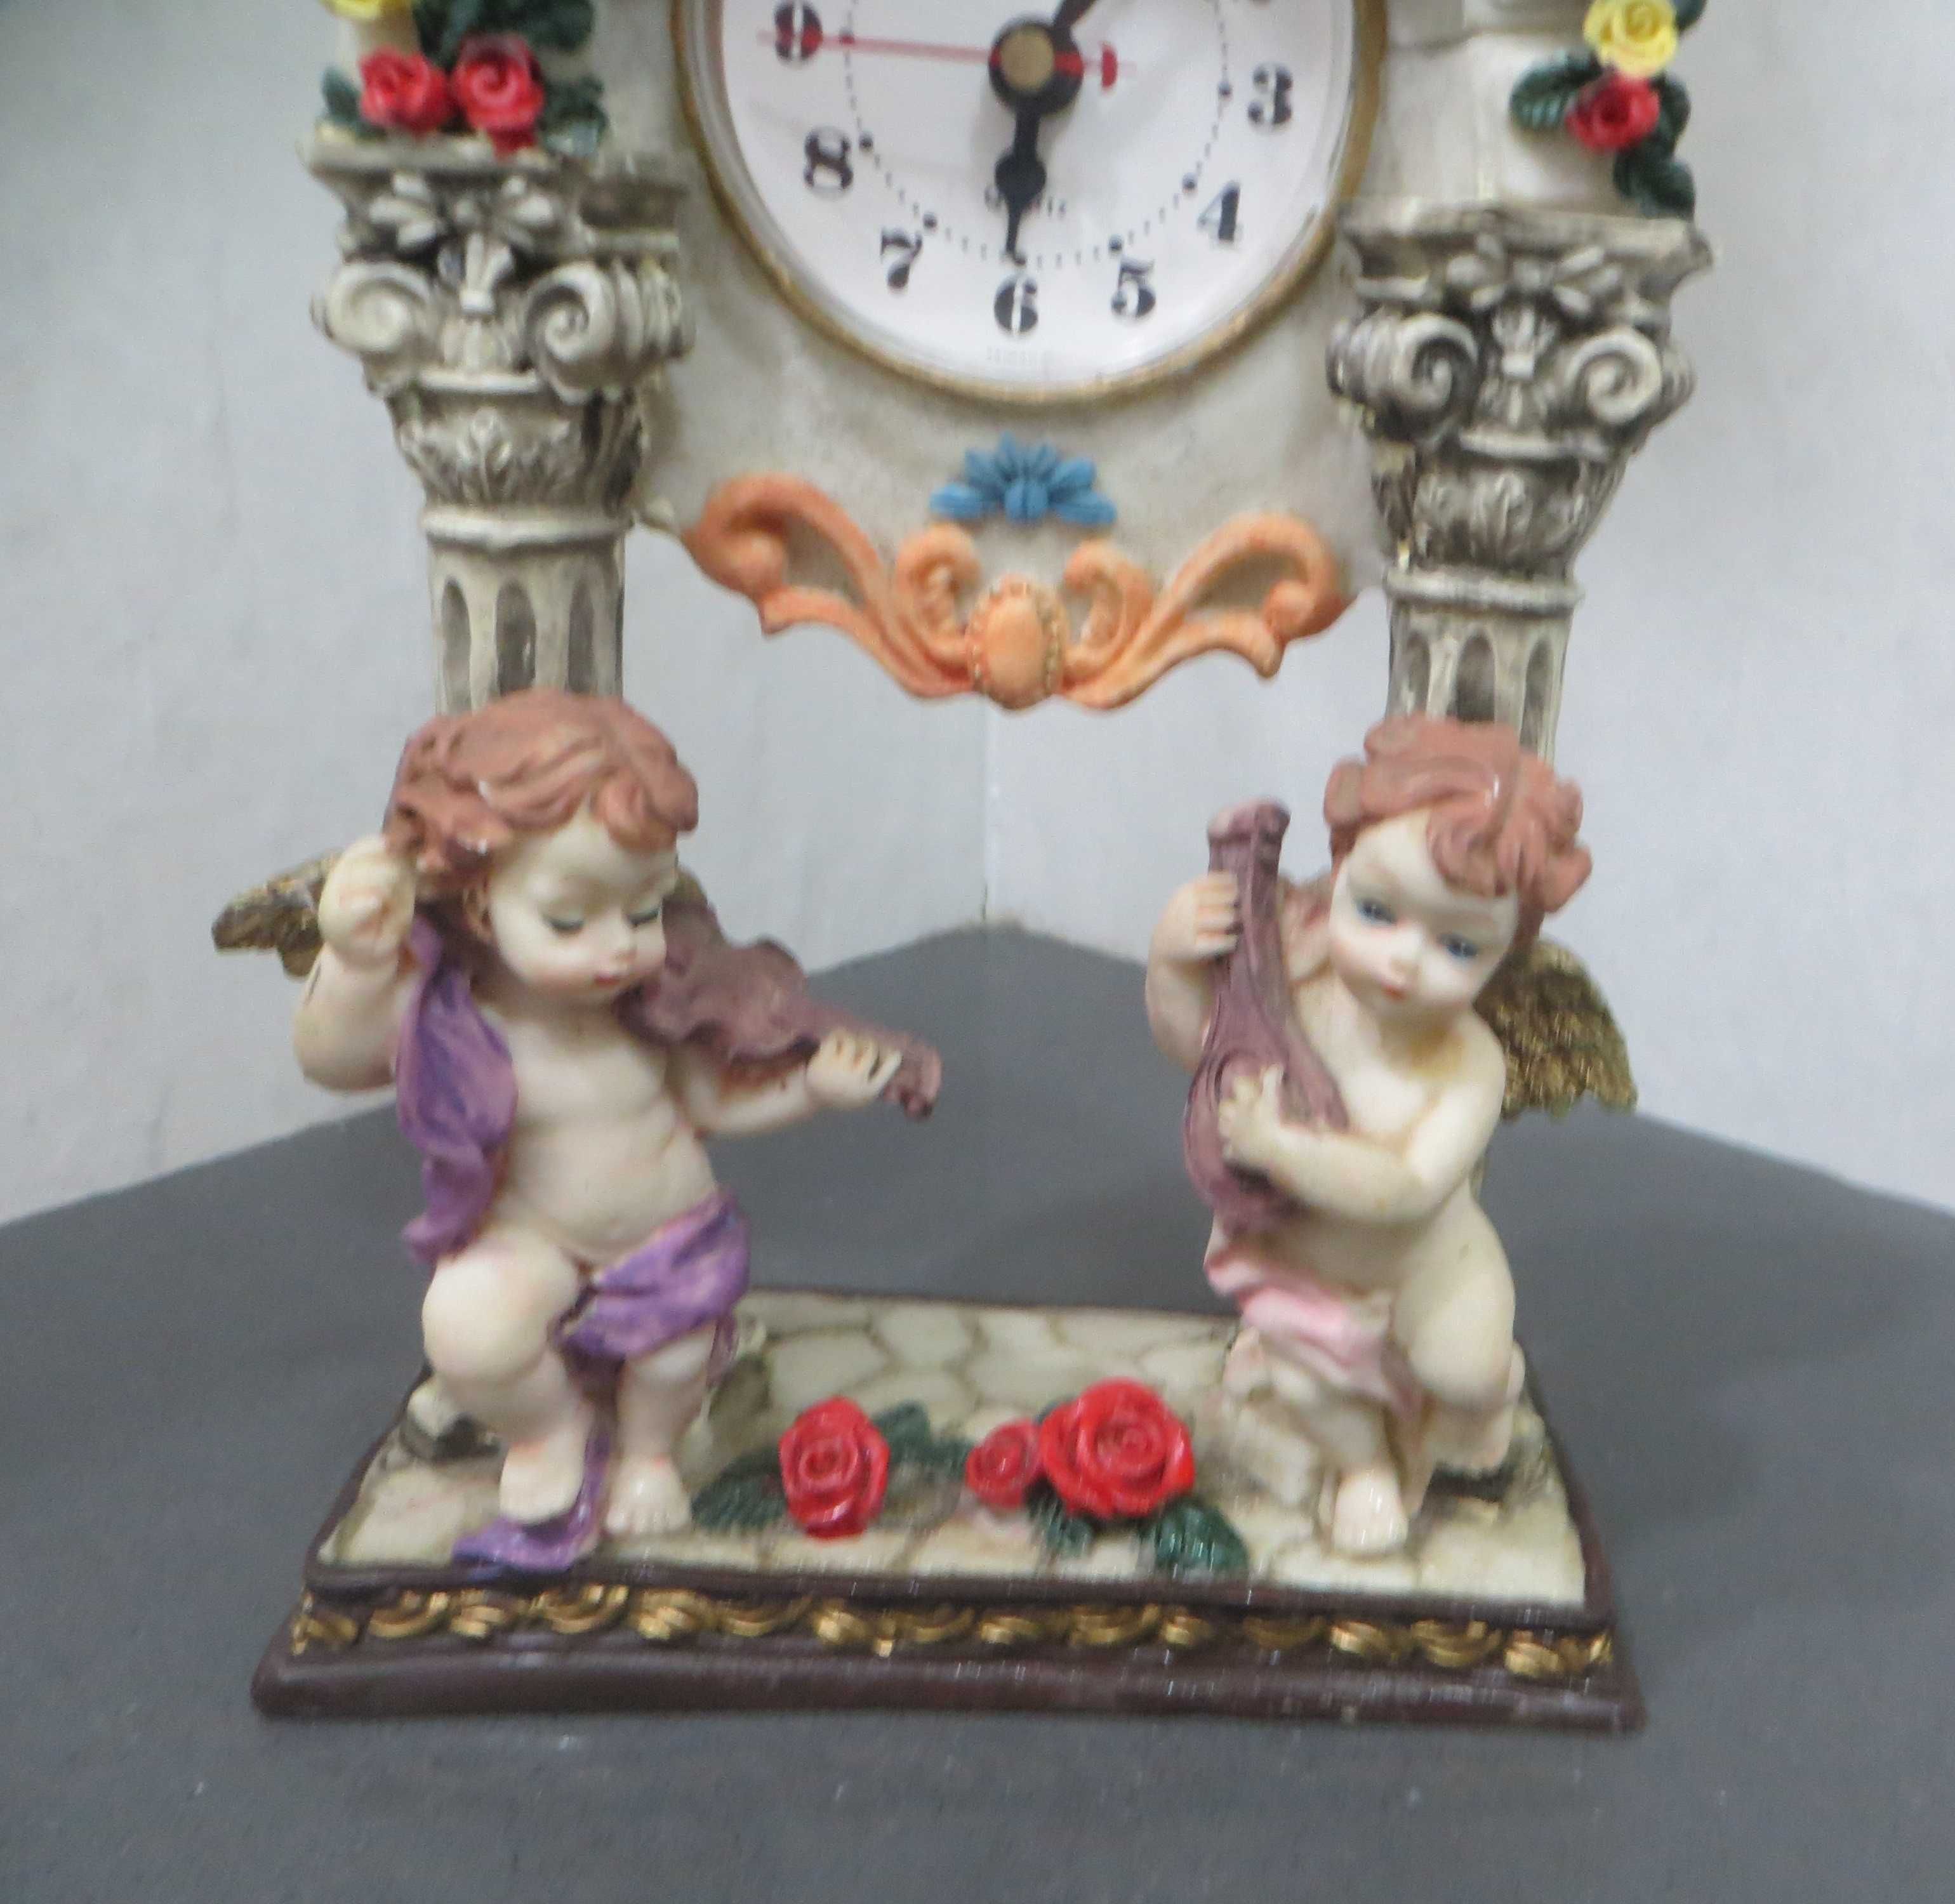 Relógio anos 30,  base osso e anjos em porcelana, todo adornado -23 cm